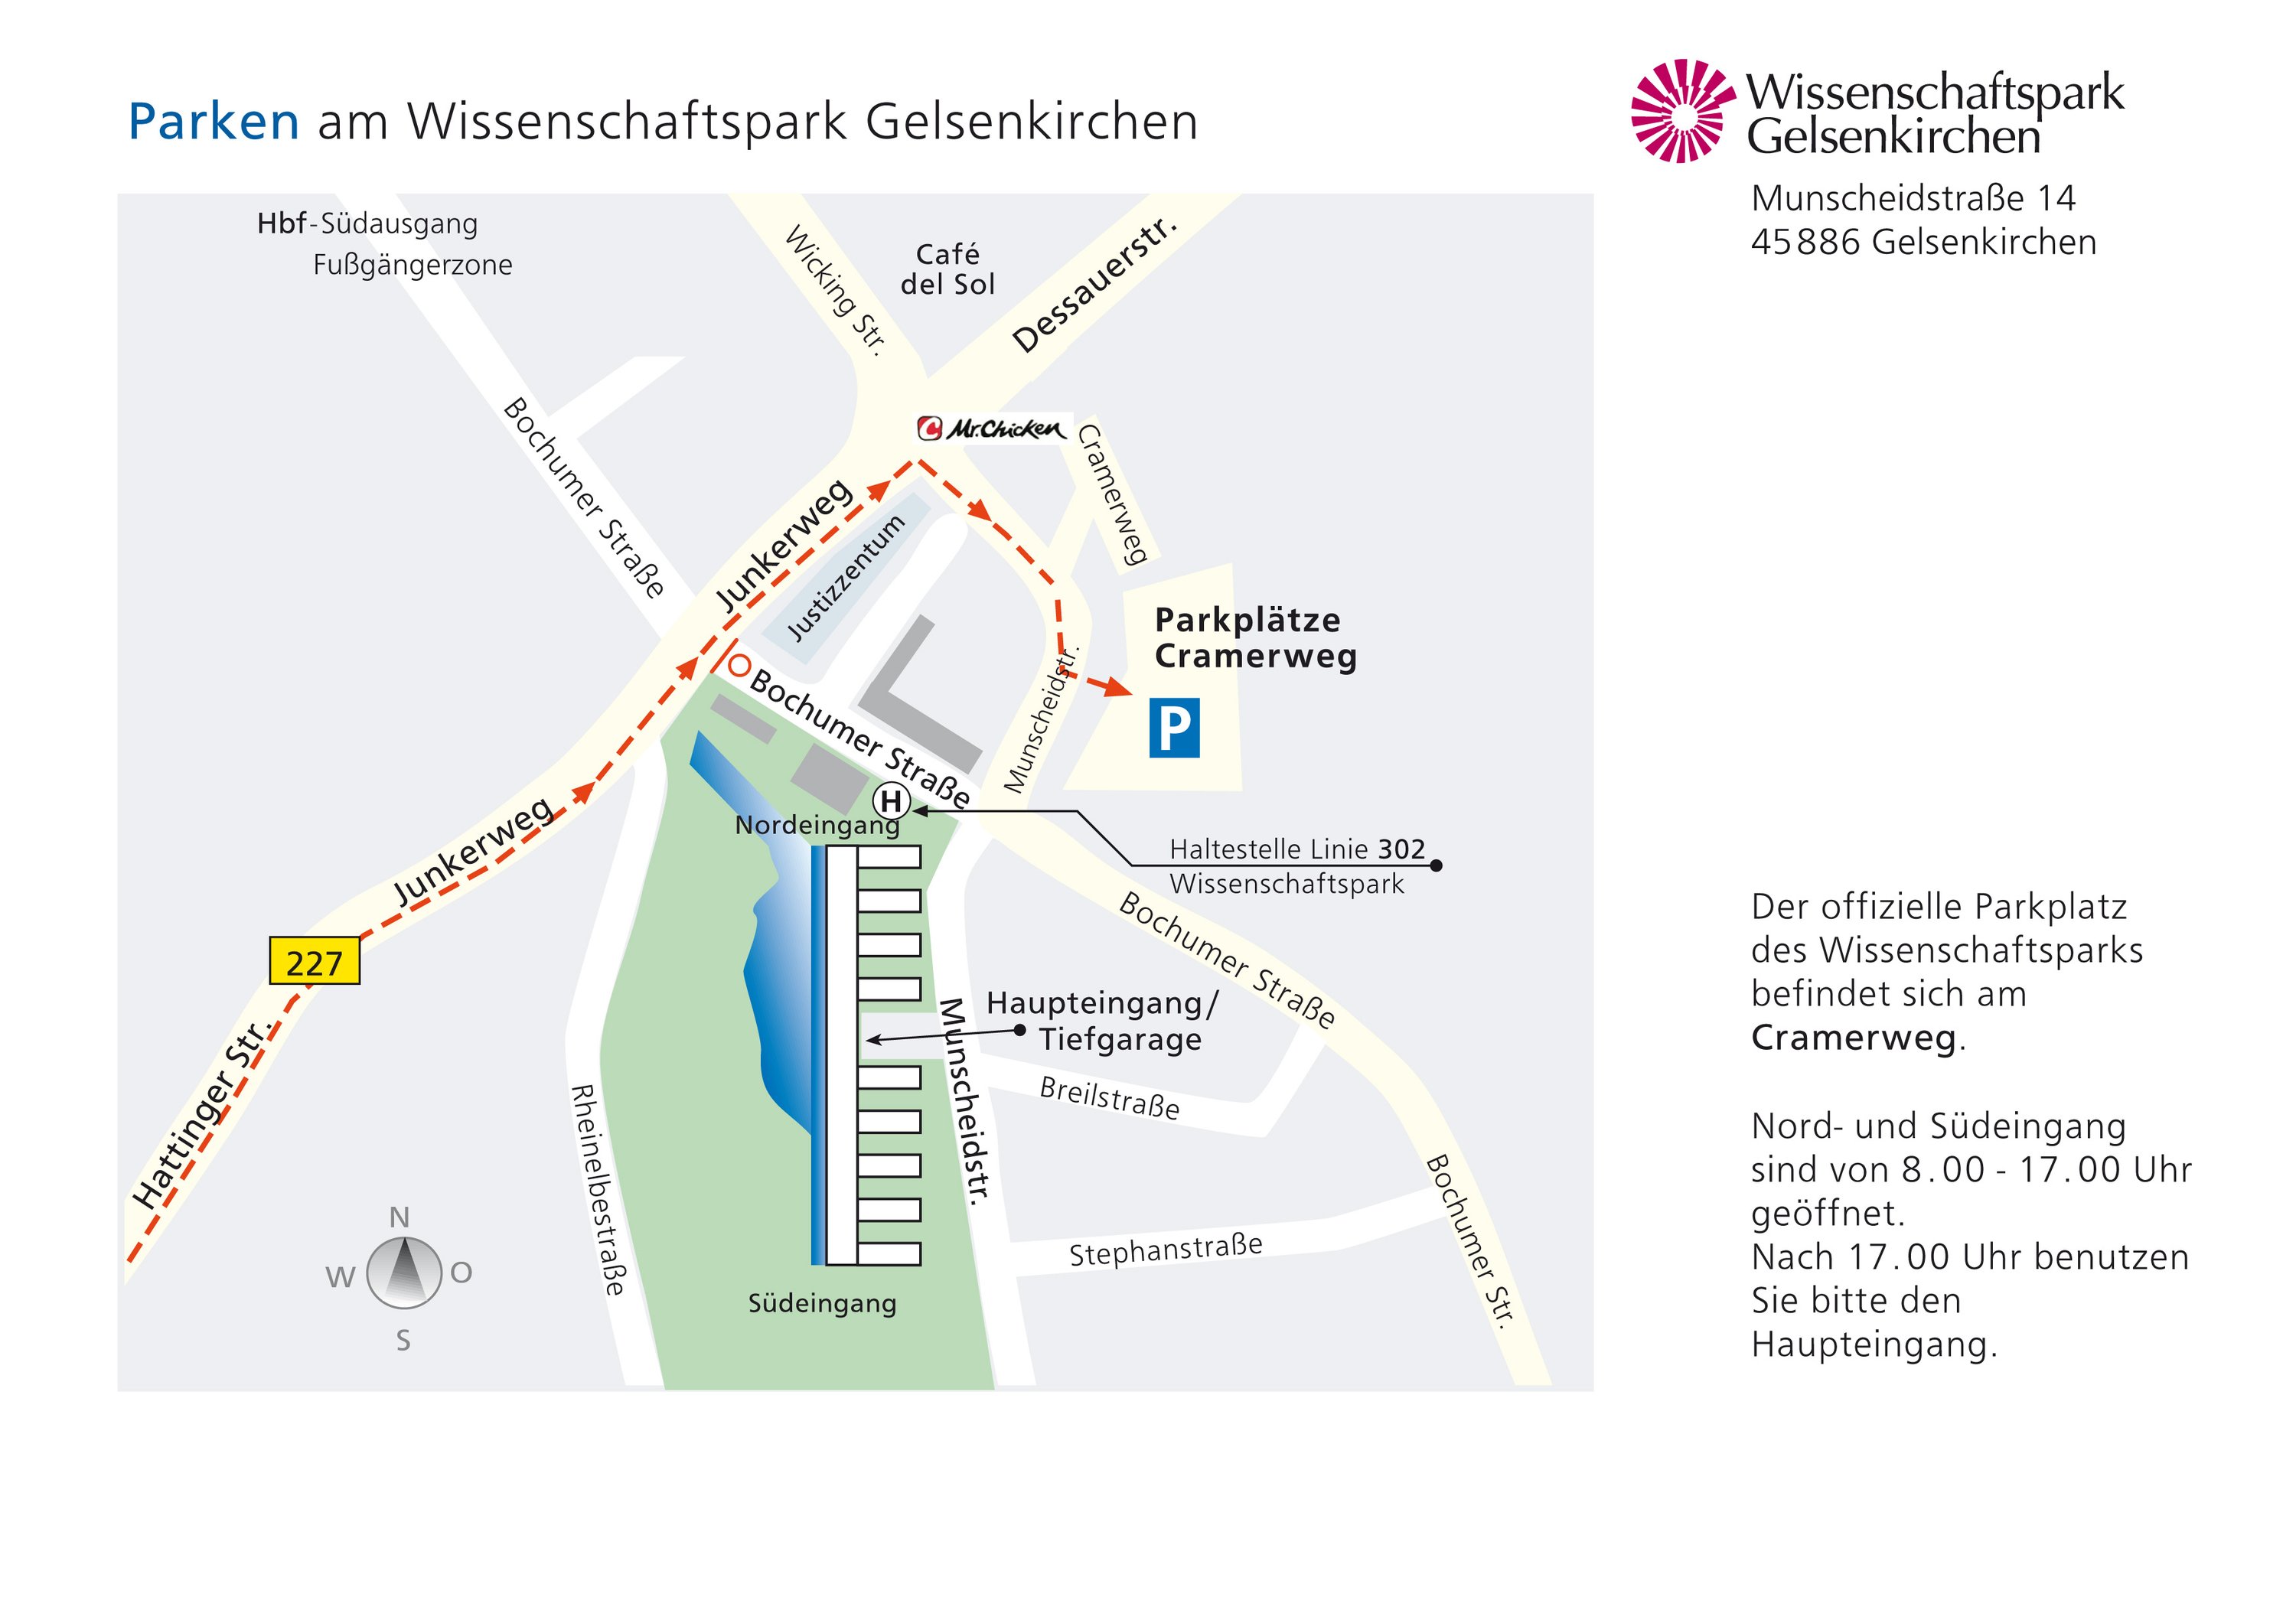 Anfahrtsskizze: Lageplan des Wissenschaftsparks mit verschiedenen Anfahrtswegen.